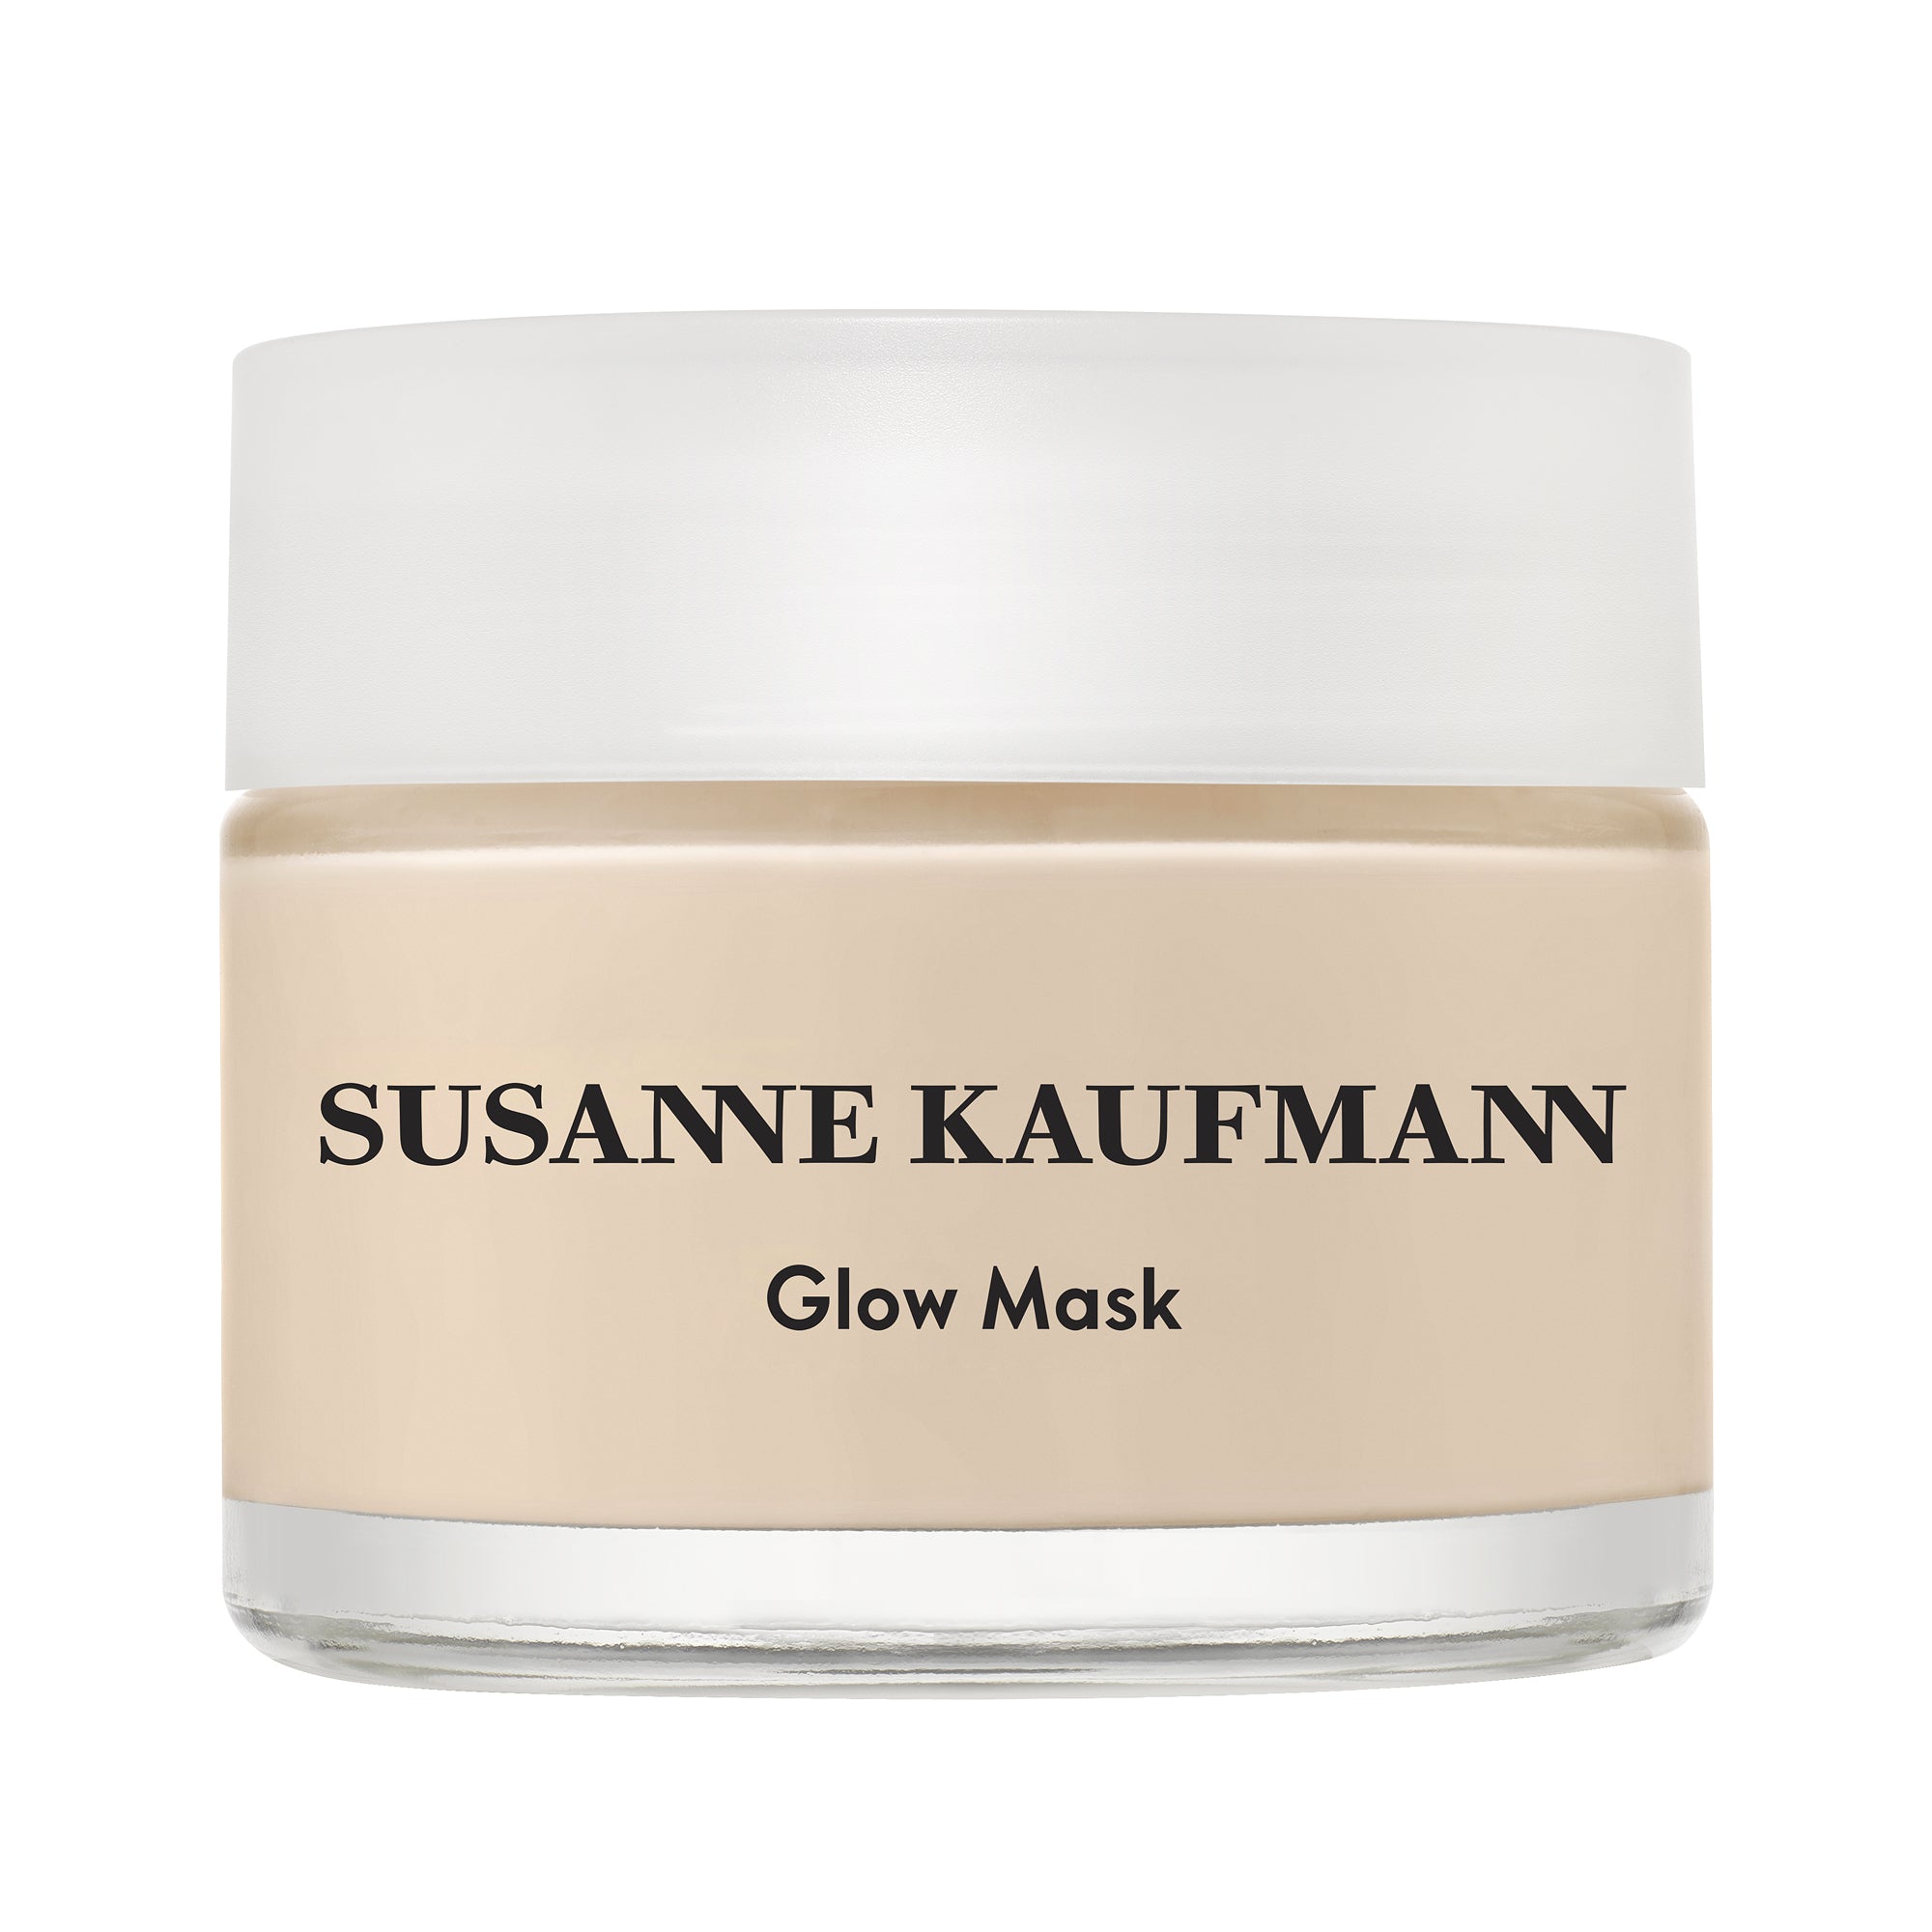 Indisponible - Masque éclat Glow mask Unavailable - Glow mask radiance mask - Susanne Kaufmann